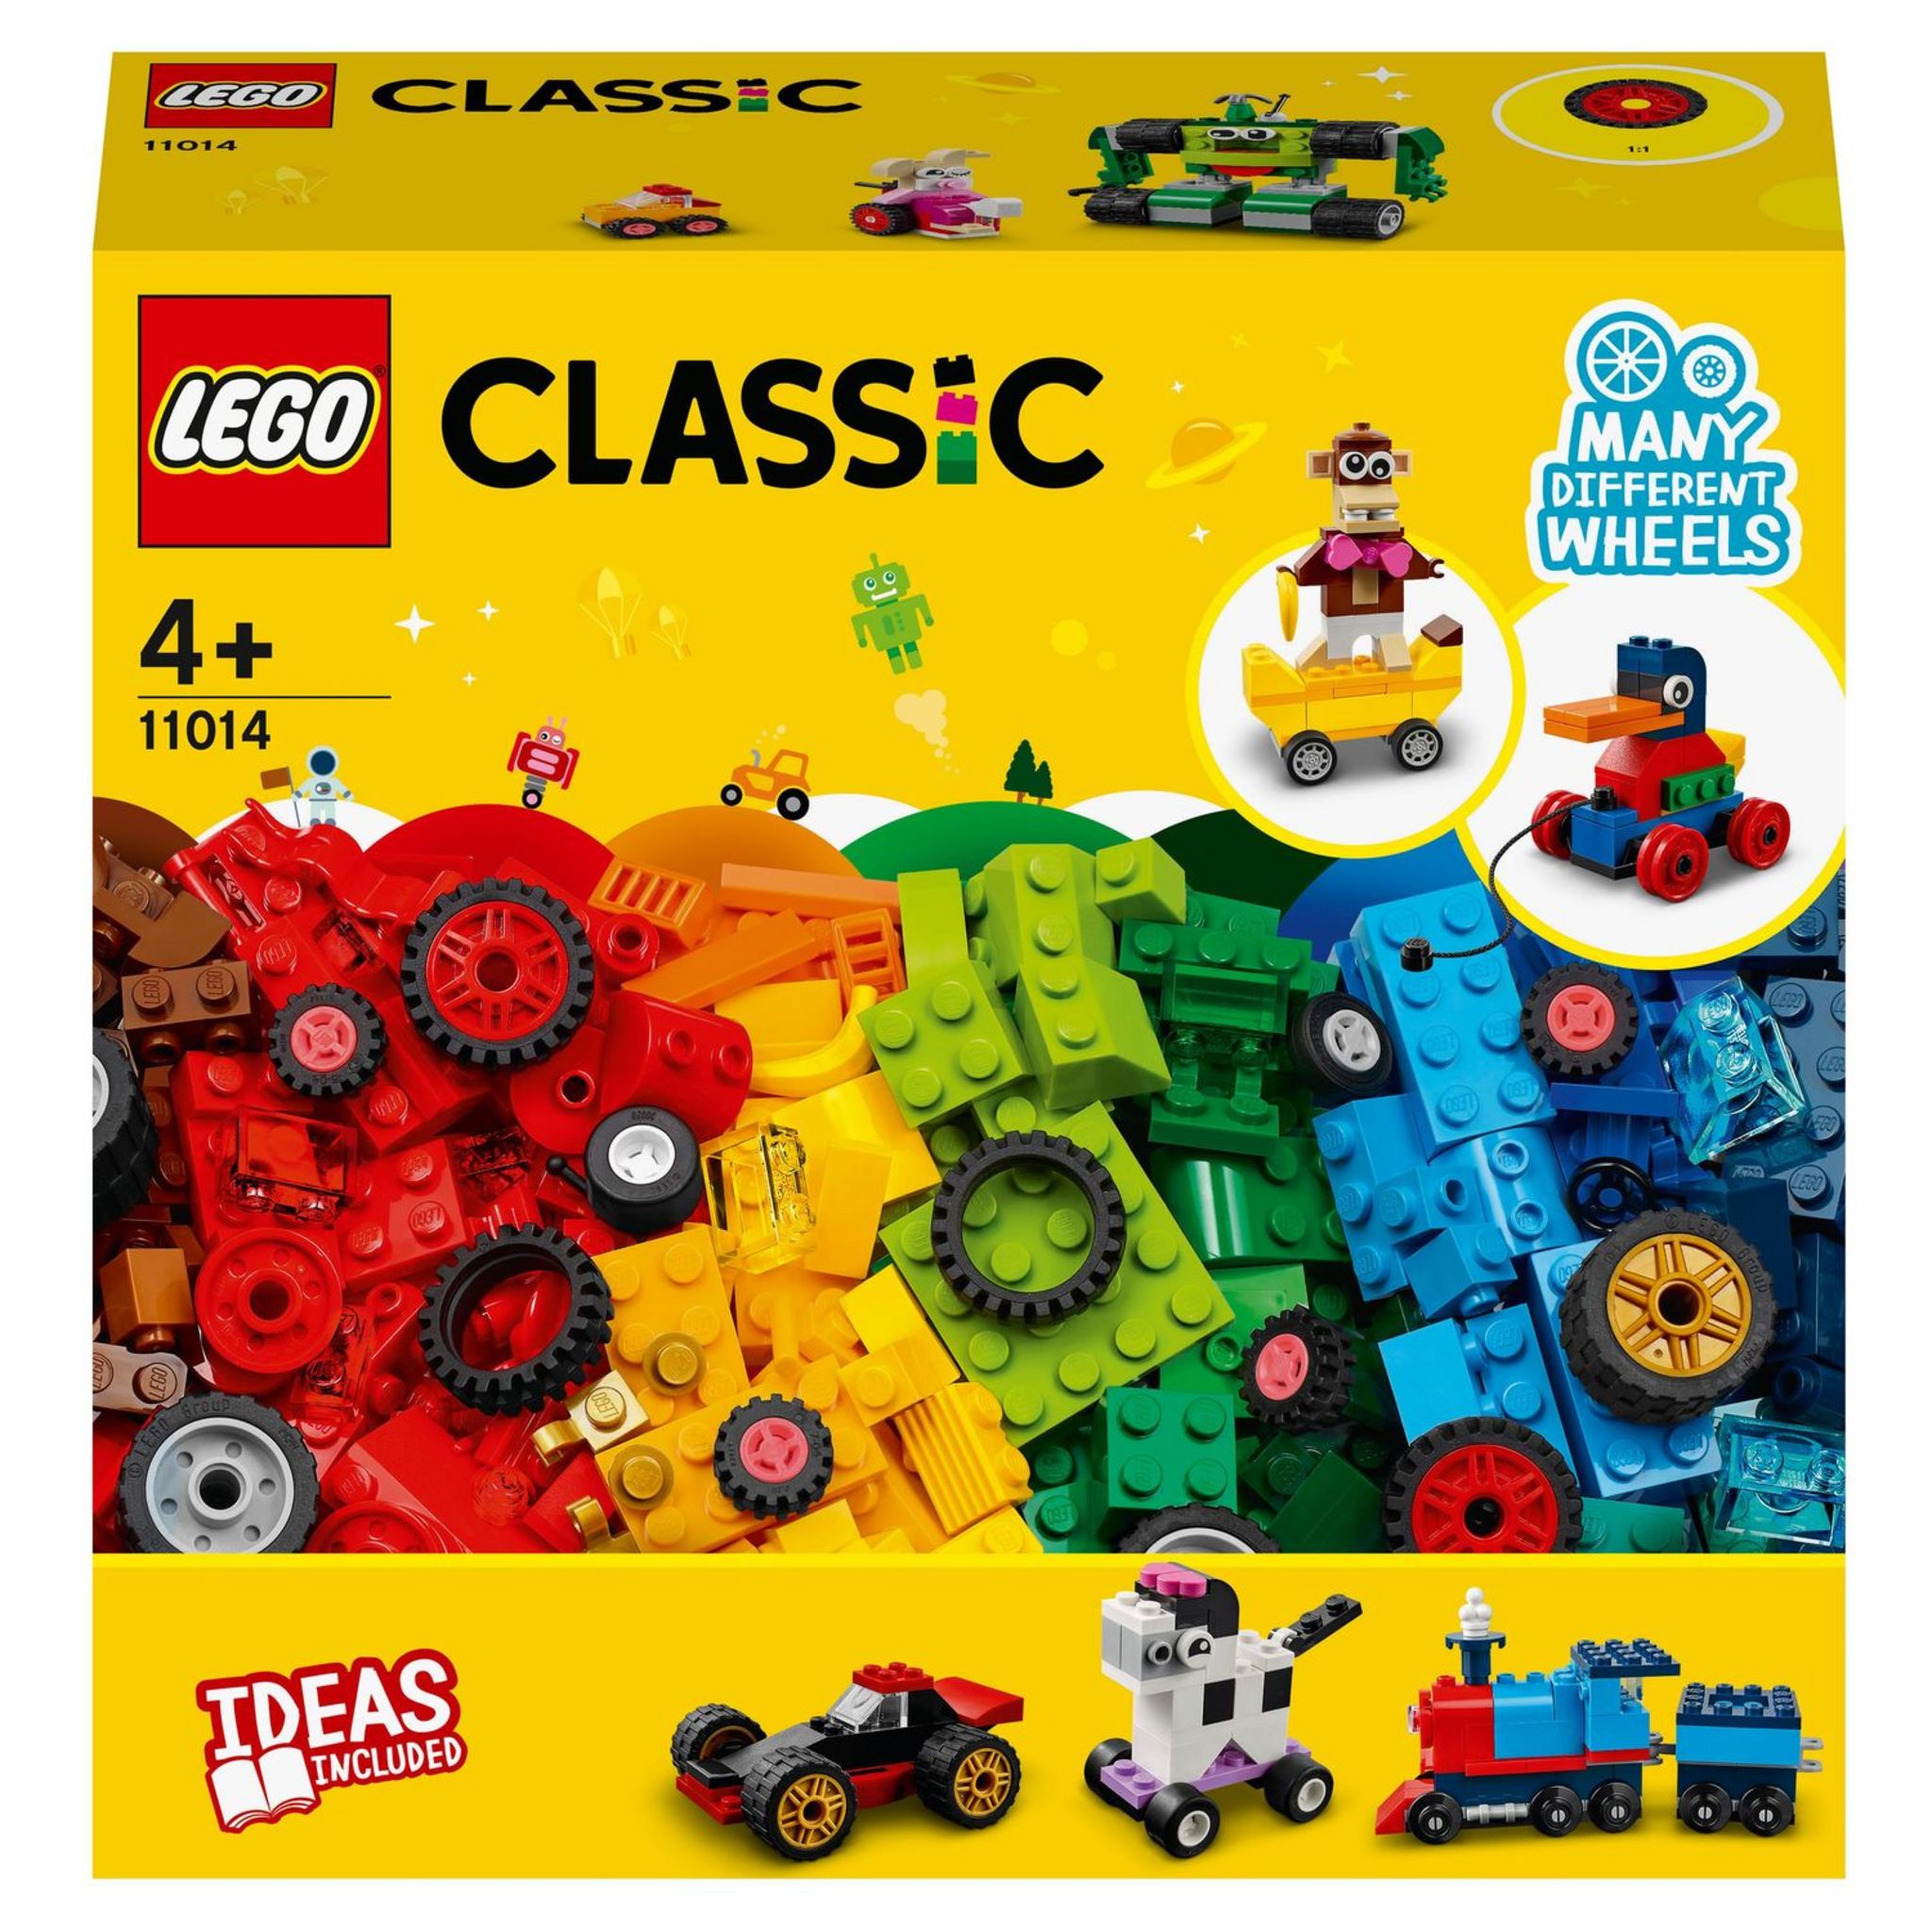 Jeux créatifs dans l'océan - LEGO® Classic - 11018 - Jeux de